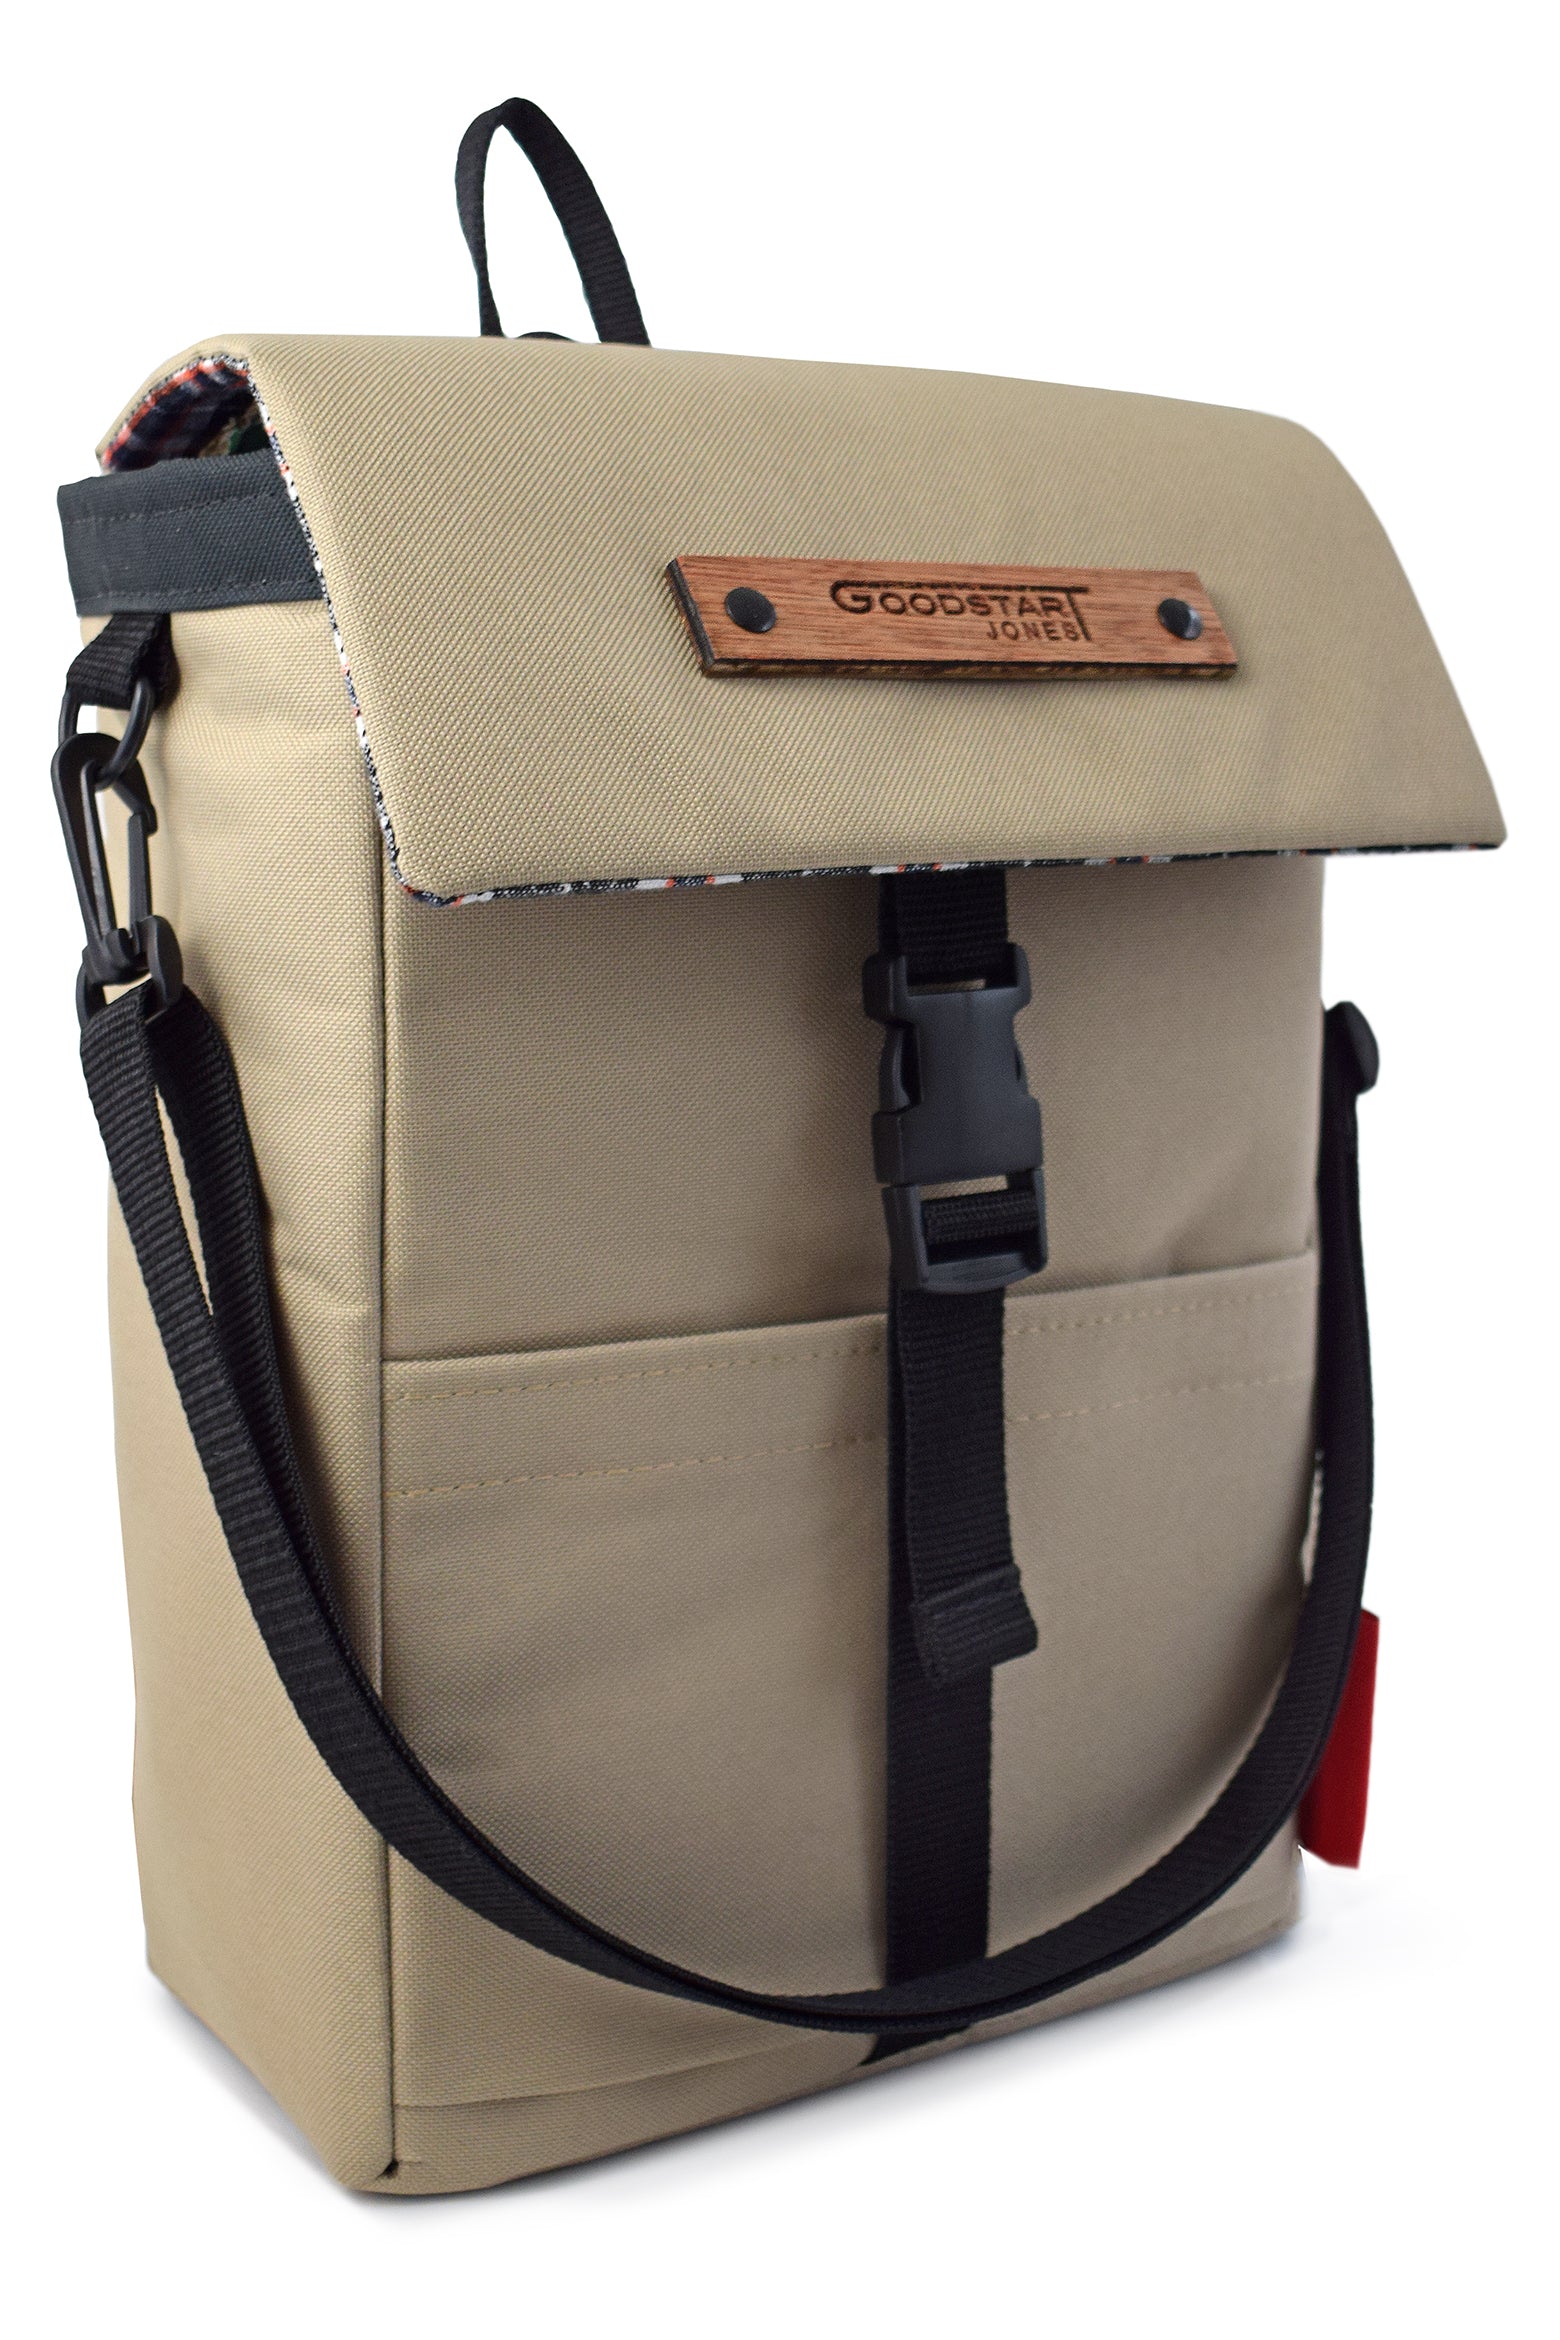 Goodstart Jones Mini Merchant Backpack | SAND – British Backpacks ...